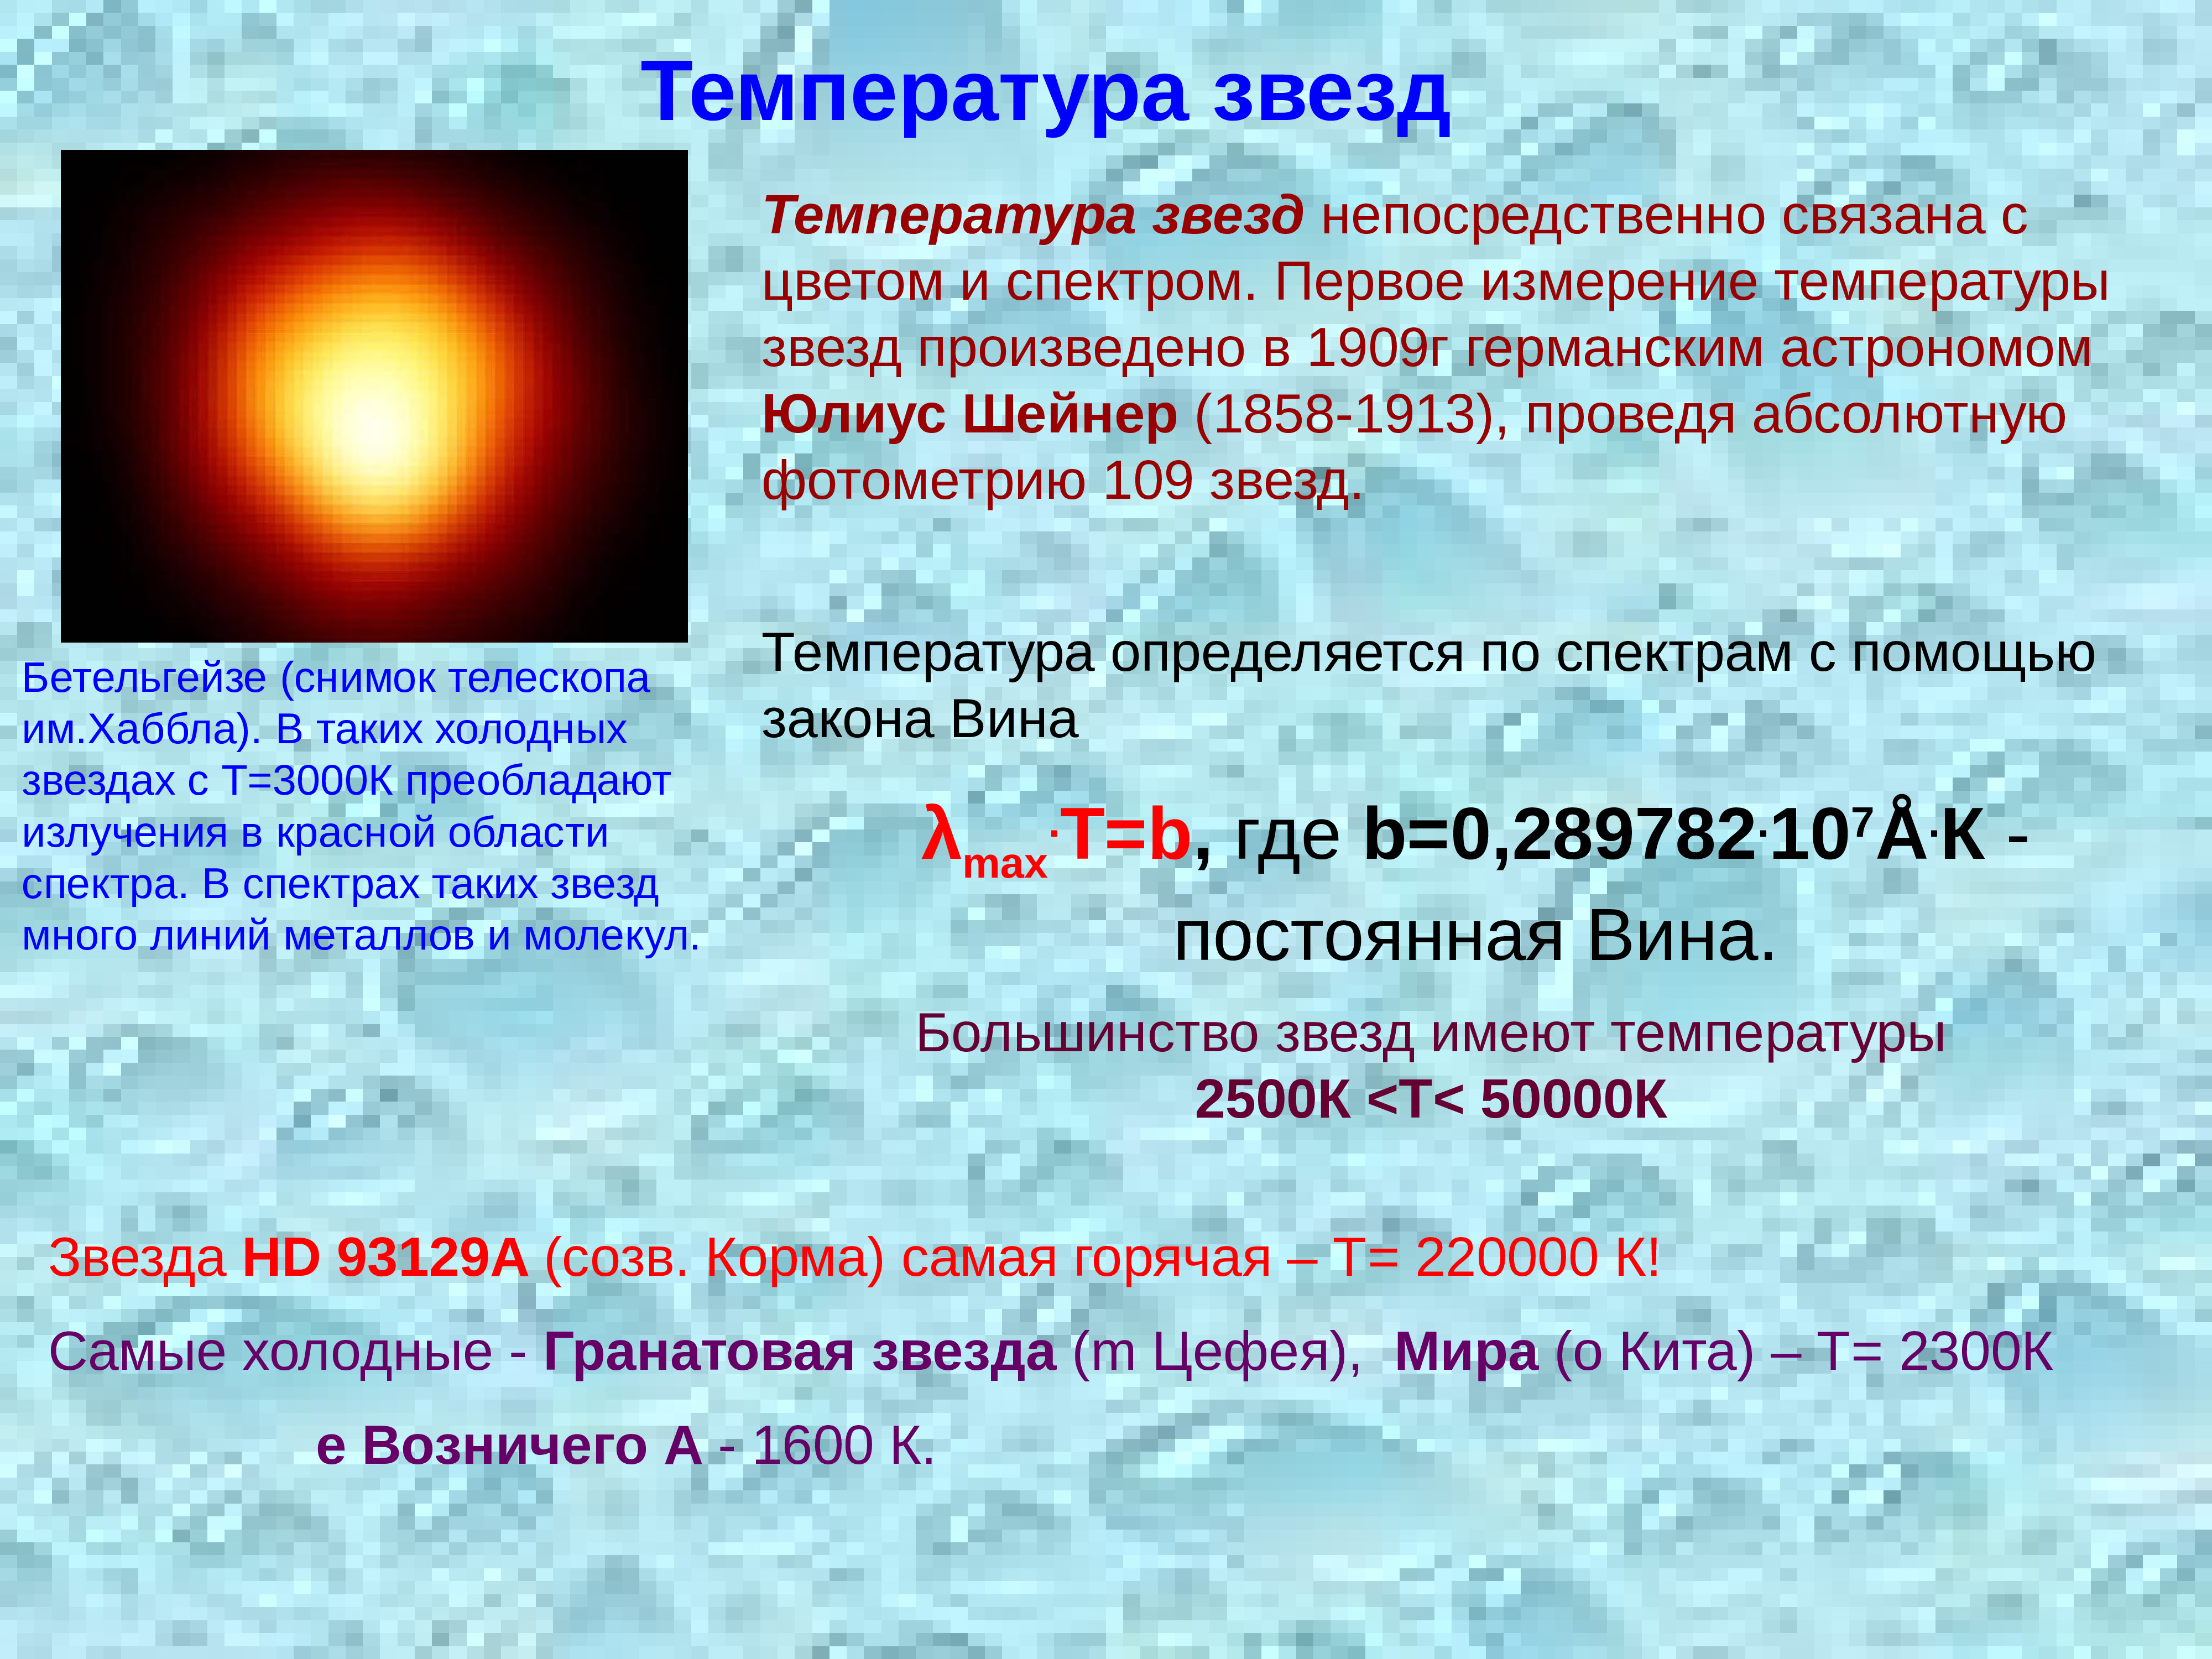 Холодная температура солнца. Температура звезд. Как определить температуру звезды. Спектры цвет и температура звезд. Температура поверхности звезды.